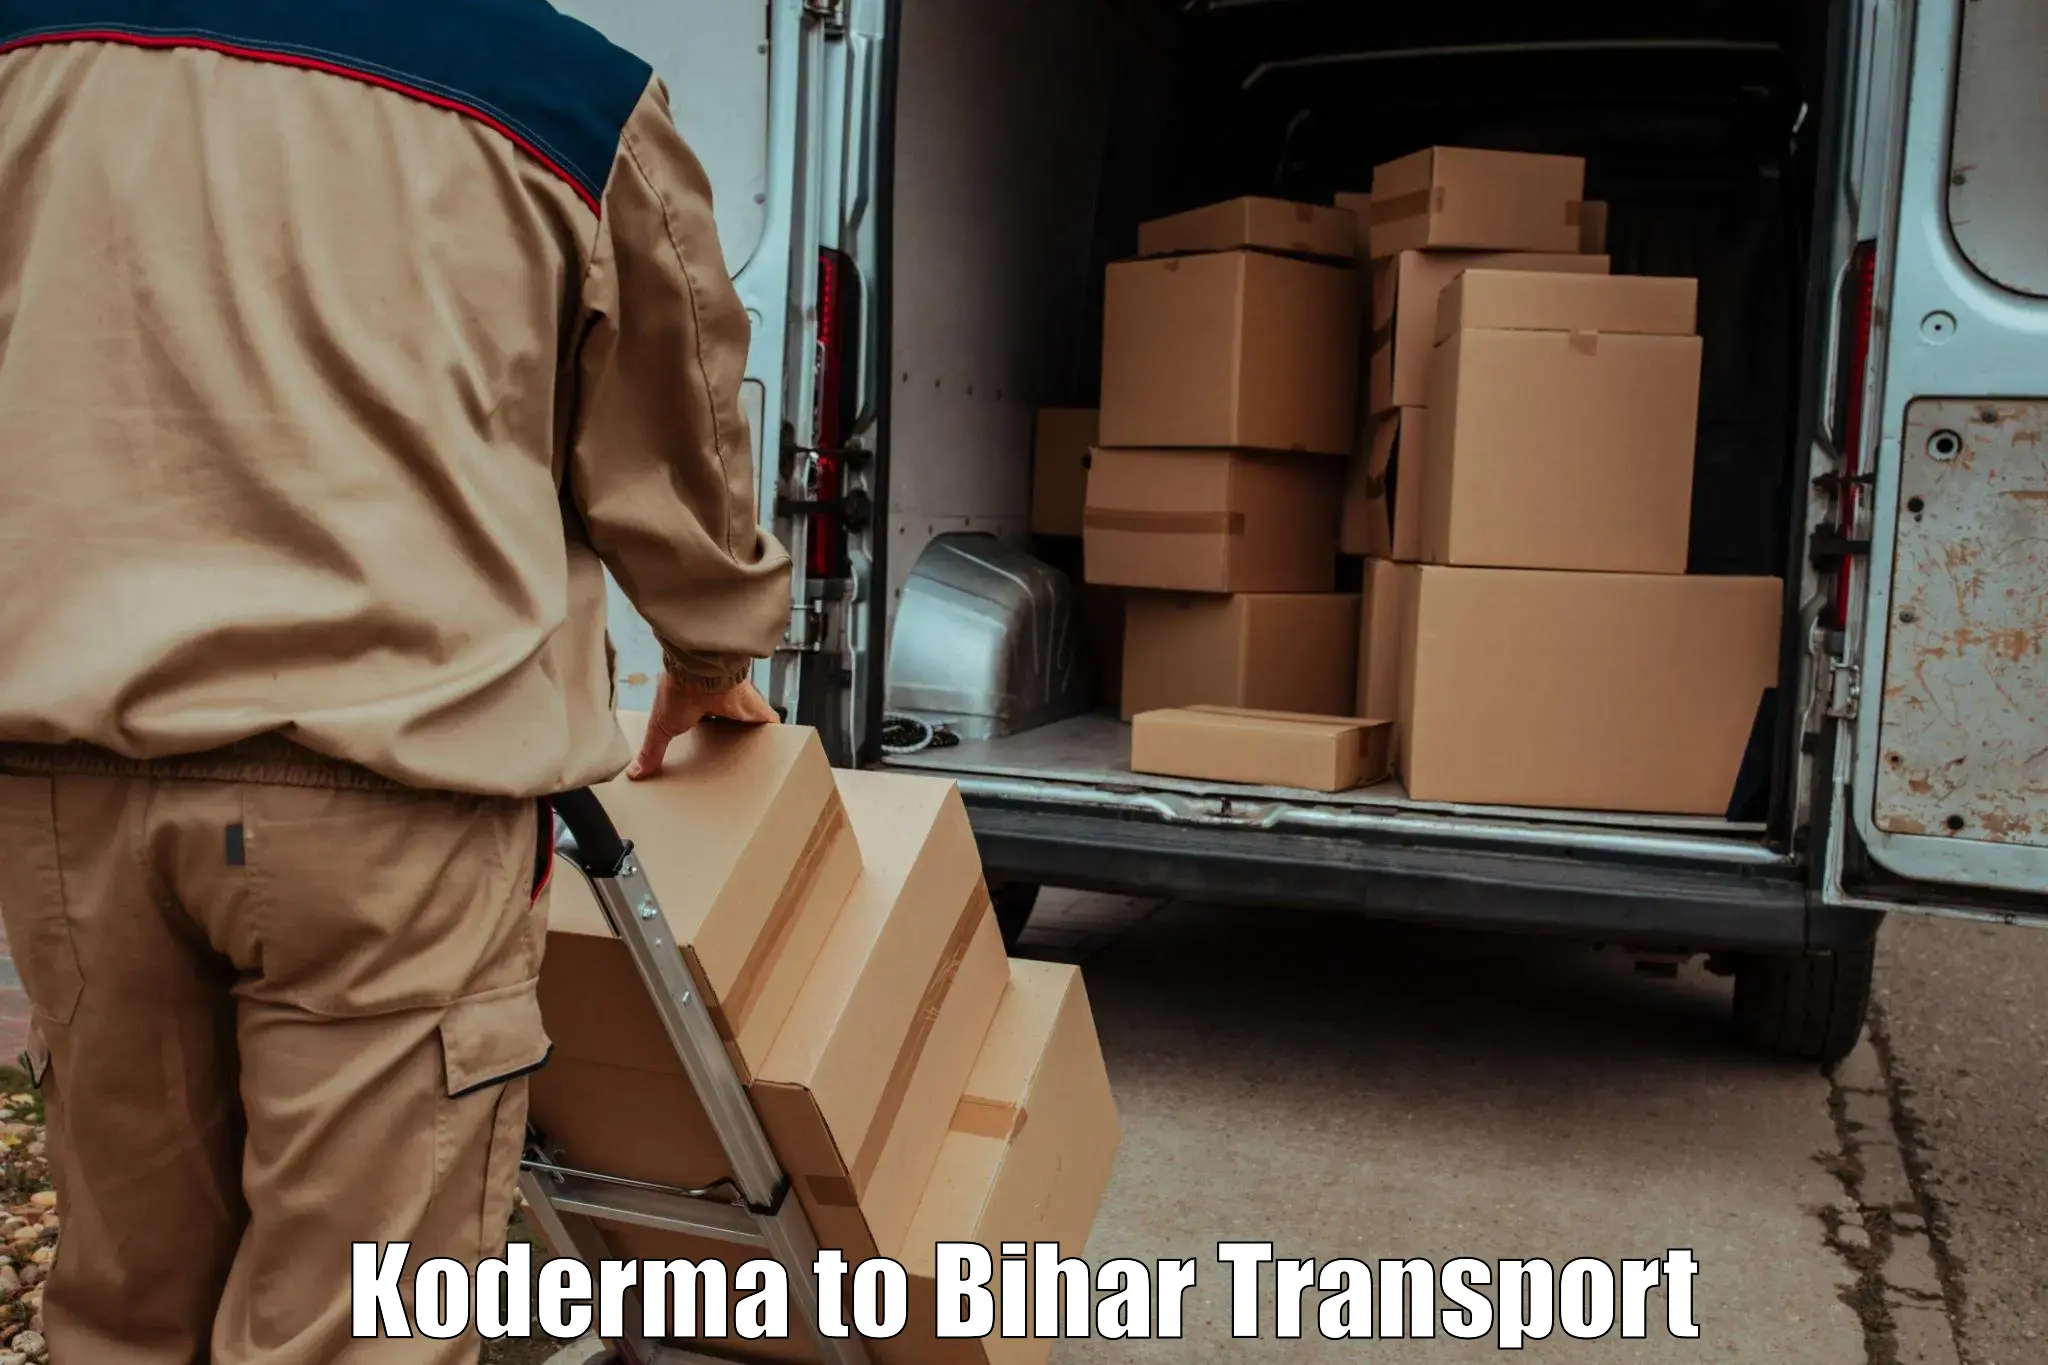 Online transport service in Koderma to Aurangabad Bihar